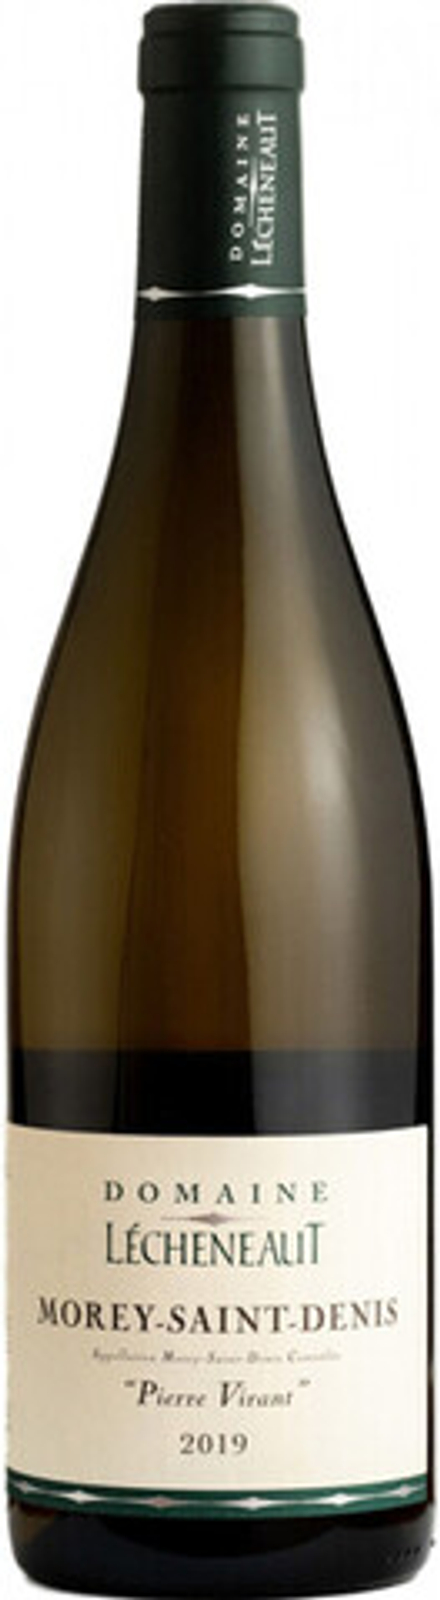 Вино Domaine Lecheneaut Morey-Saint-Denis Pierre Virant AOC, 0,75 л.